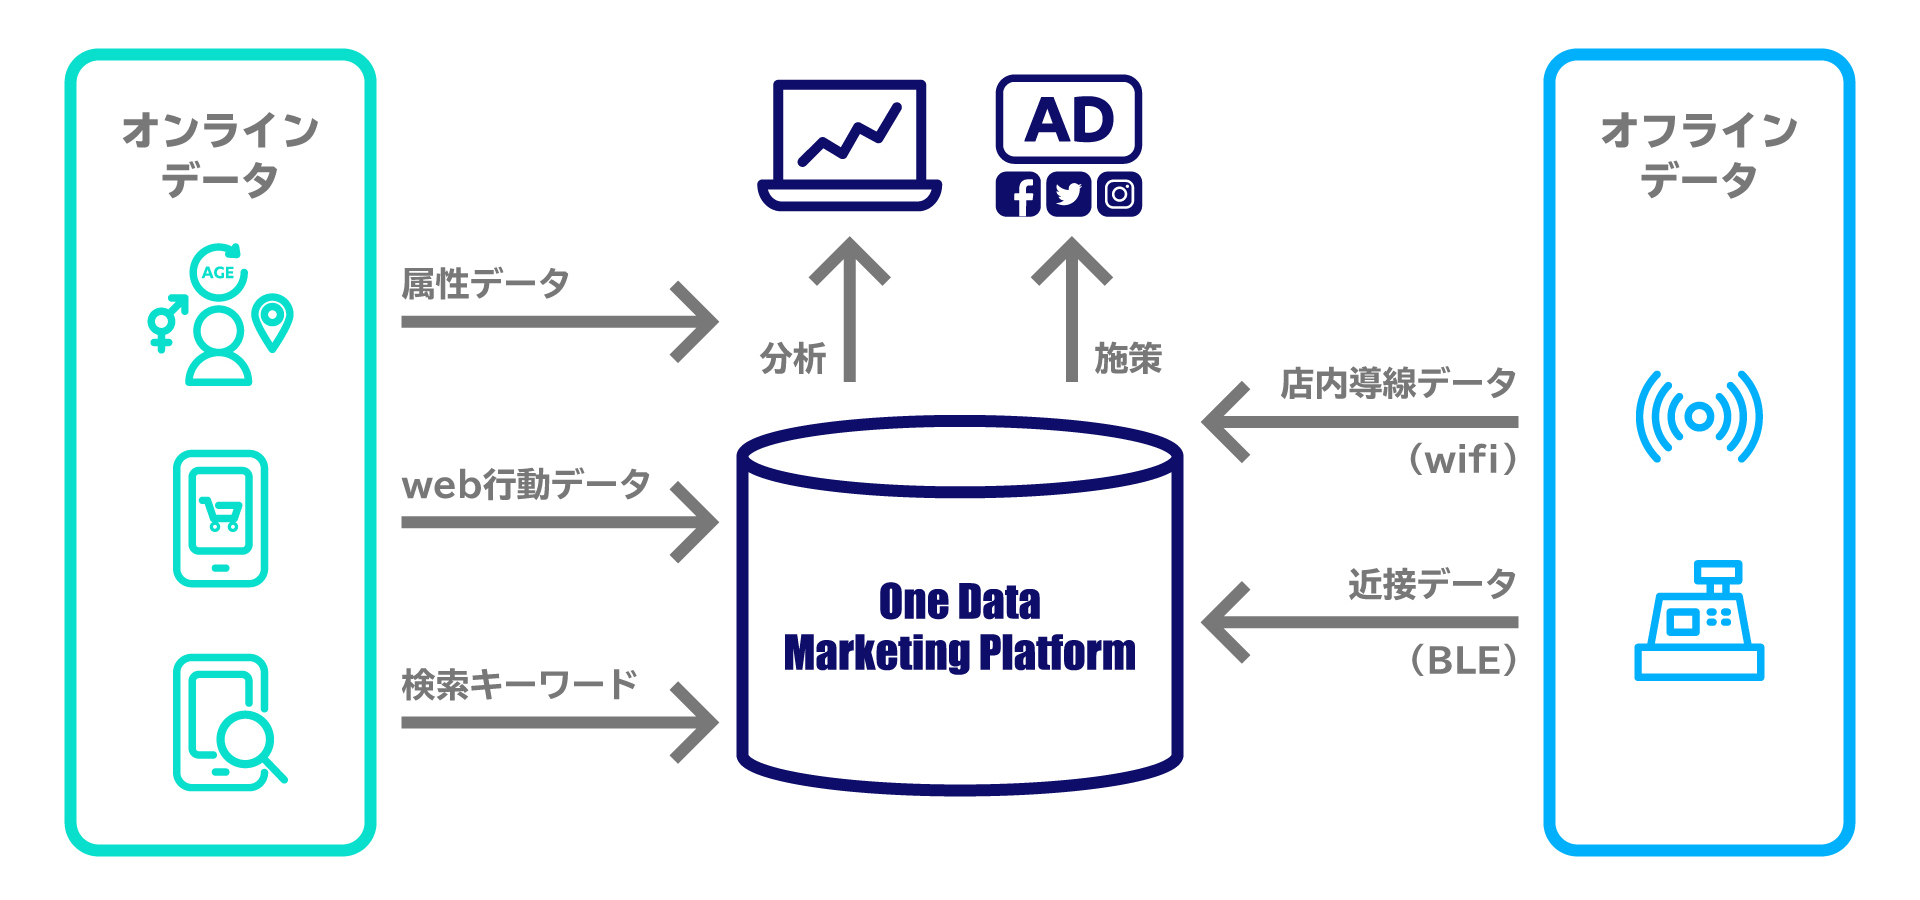 効率的なストアマーケティングを実現するomoソリューション One Data Marketing Platform を12月23日から提供 交通広告媒体の価値向上に向け 小田急エージェンシーが採用 Supership